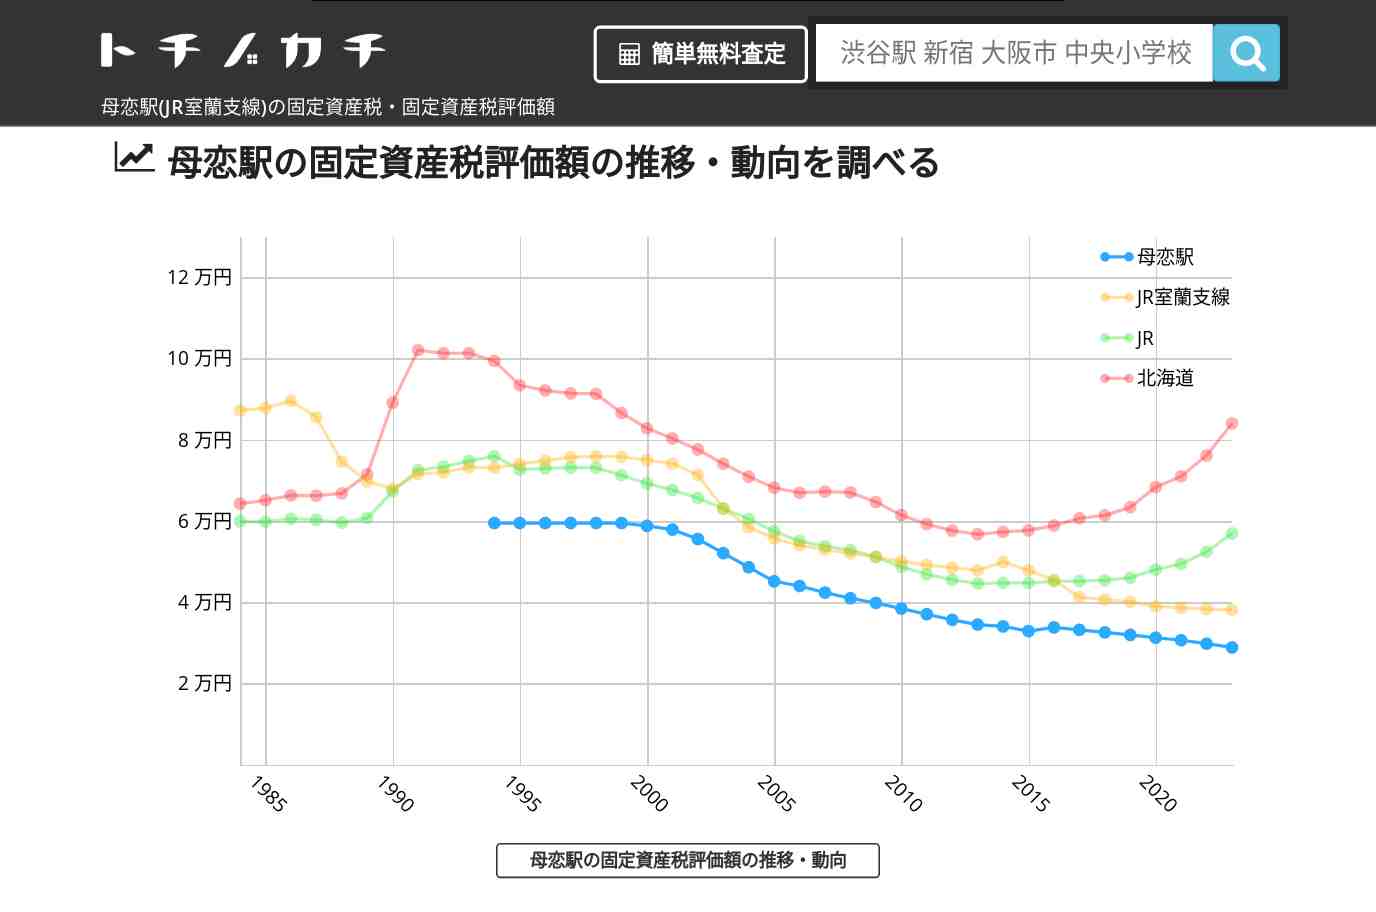 母恋駅(JR室蘭支線)の固定資産税・固定資産税評価額 | トチノカチ